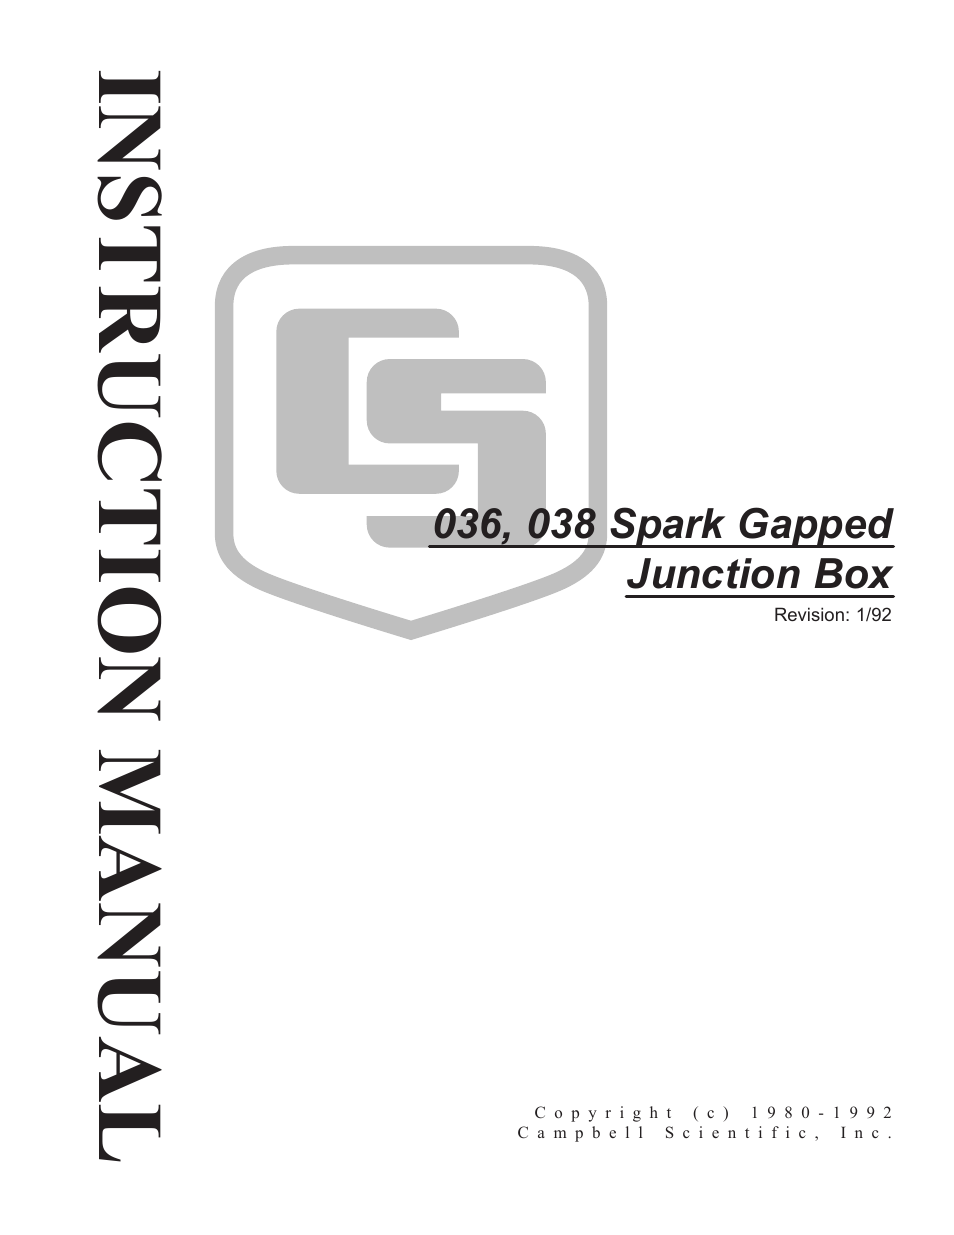 036, 038 Spark Gapped Junction Box